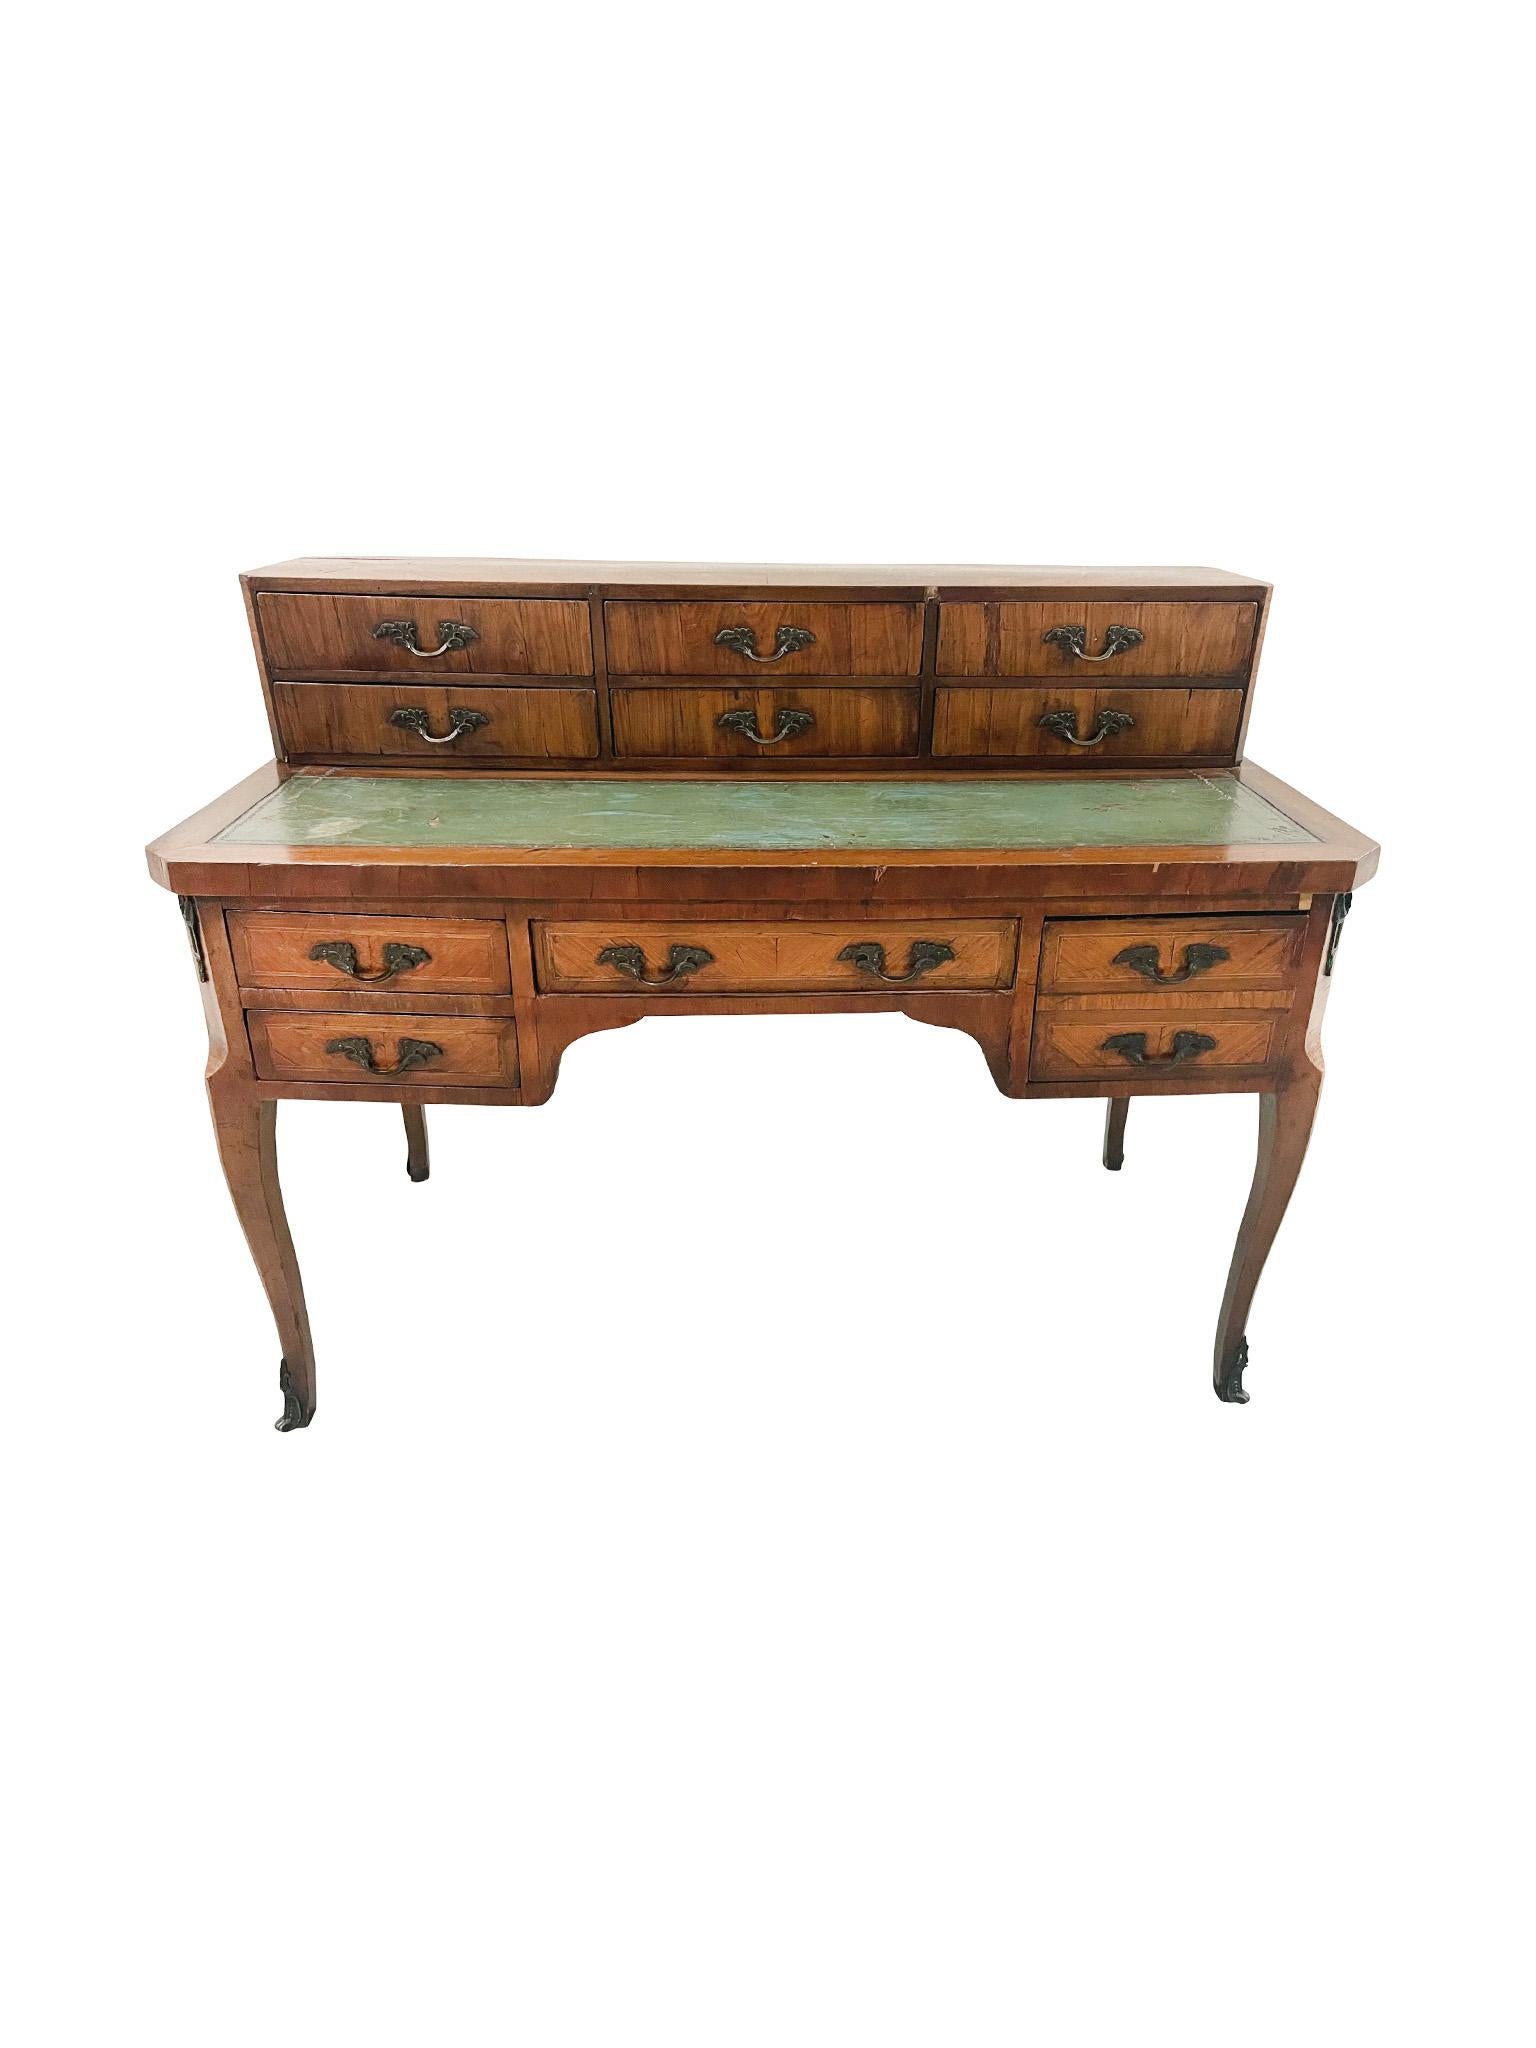 Fabriqué à la main au XIXe siècle, ce bureau de style Louis XV est composé de bois de rose avec placage décoratif, d'un plateau en cuir vert, et de montures et poignées en bronze. Le meuble plat est composé de 6 petits tiroirs. Le bureau est équipé